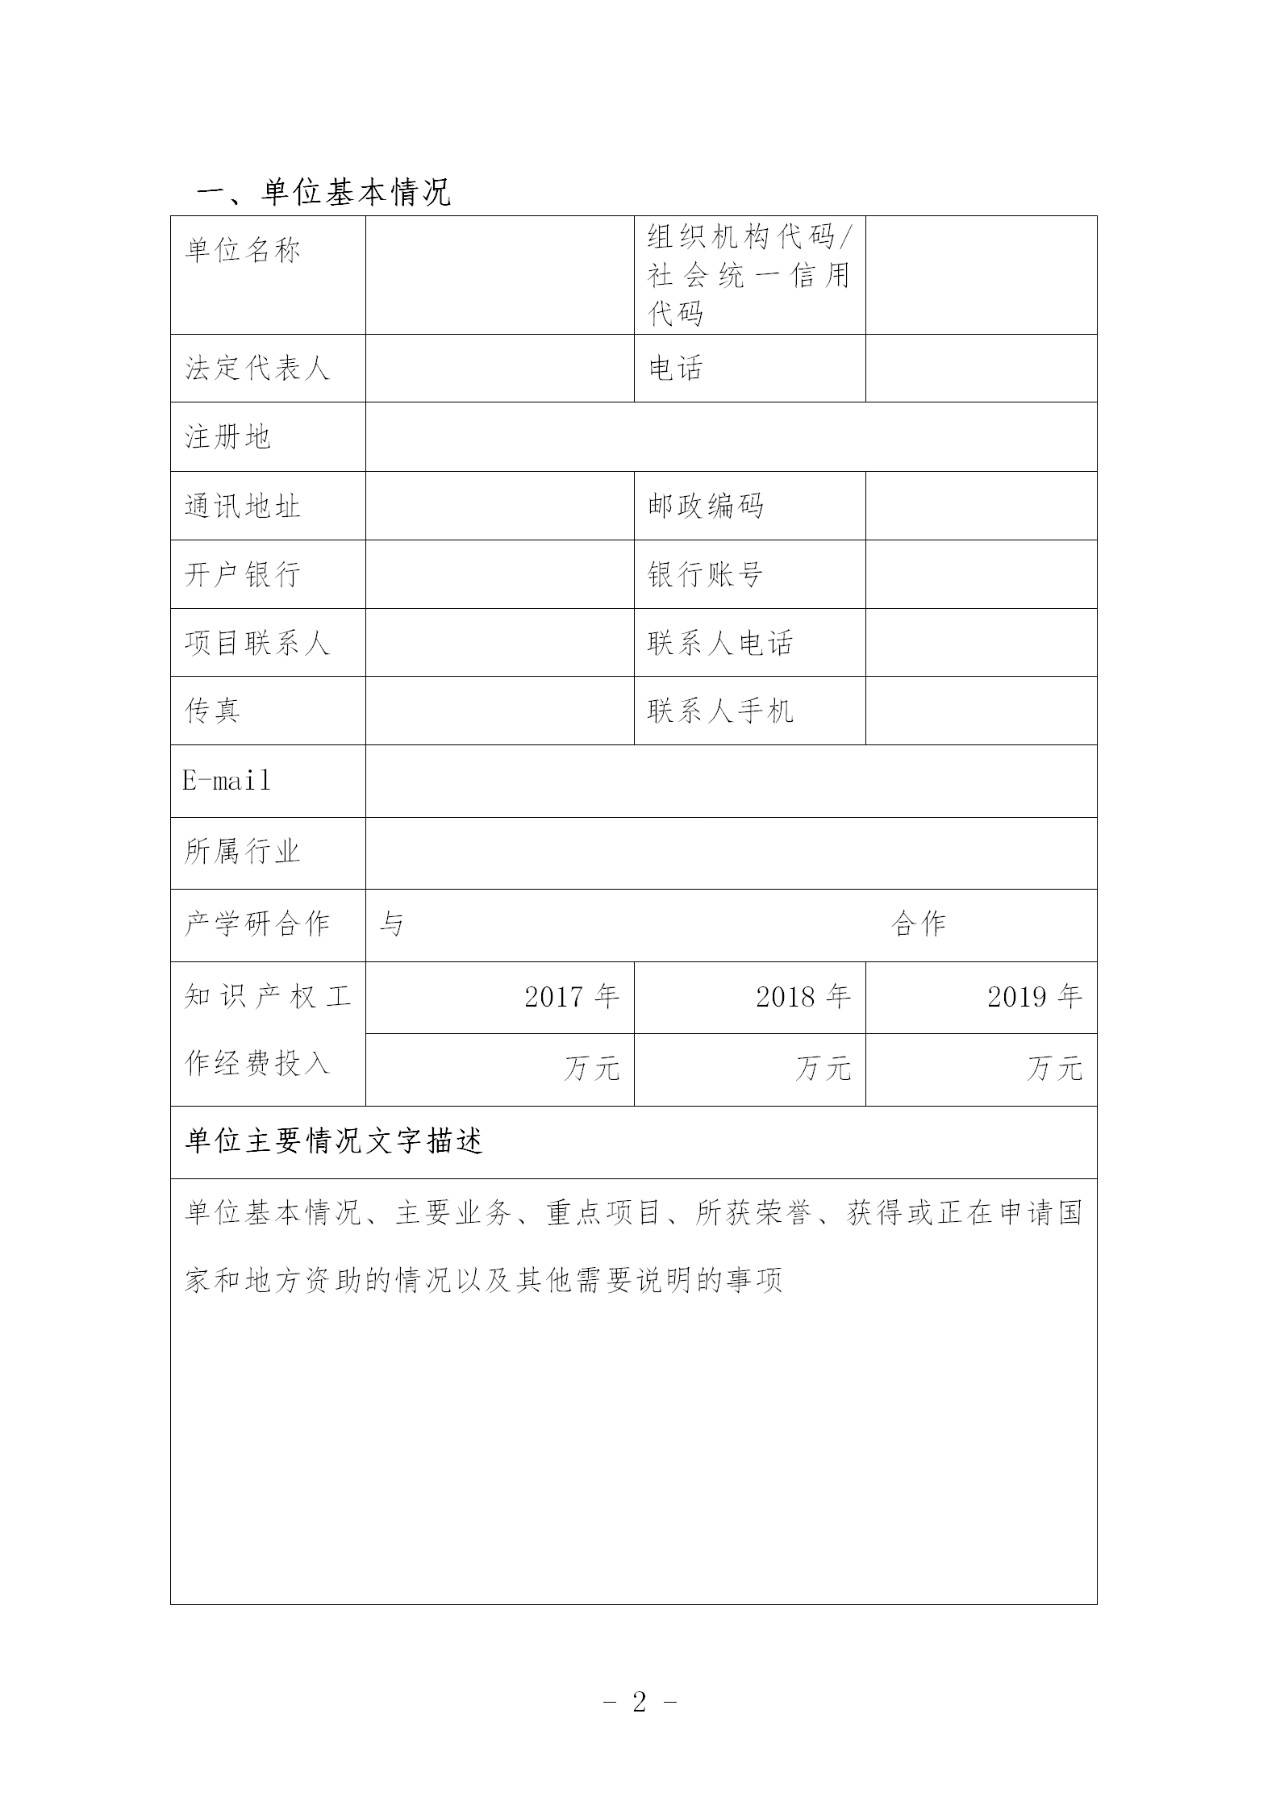 上海：将选择4-5家单位实施专利导航项目进行经费补助